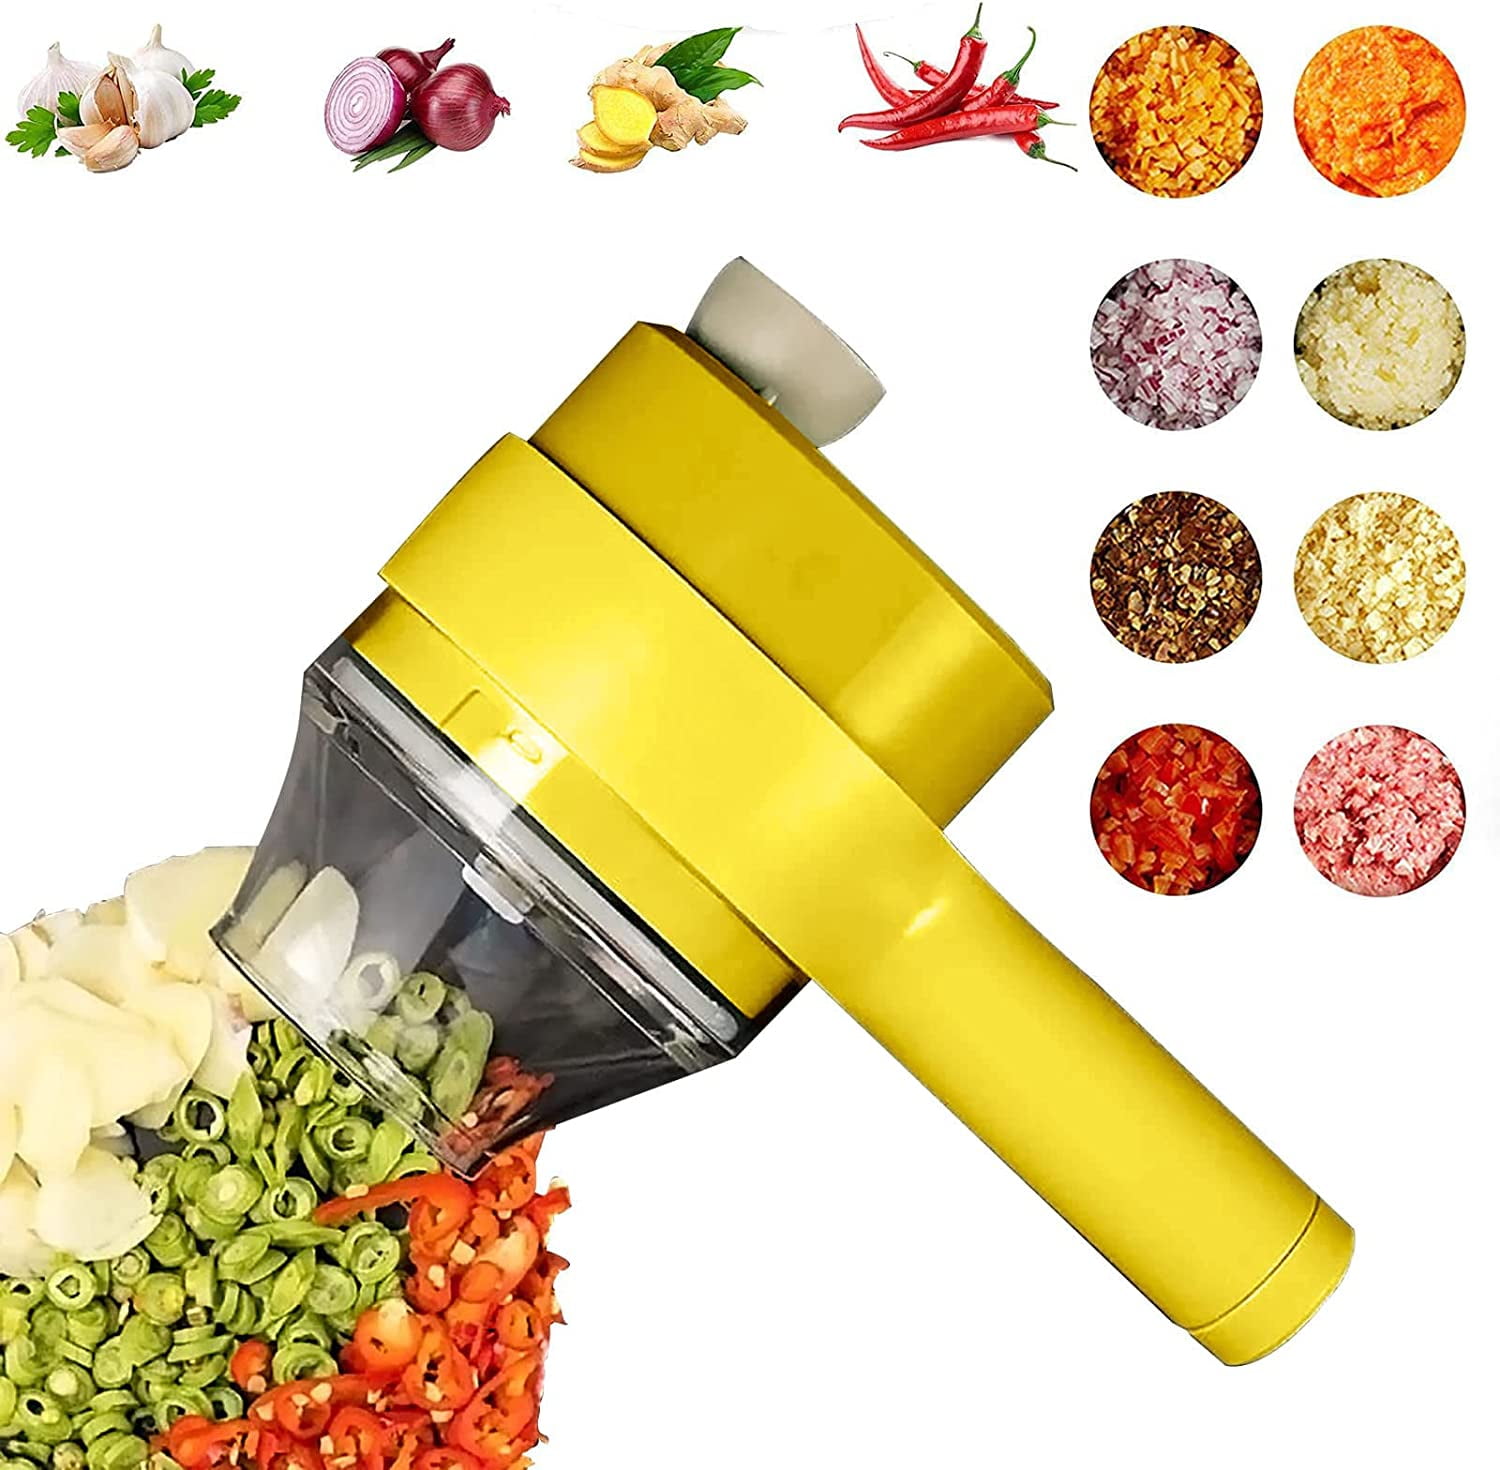 Lifease Multi-Function Manual Food Processor Kitchen Meat Grinder Vegetable  Chopper, Slicer Spinner Dicer For Fruits, Herbs, Lettuce, Salad & Foods